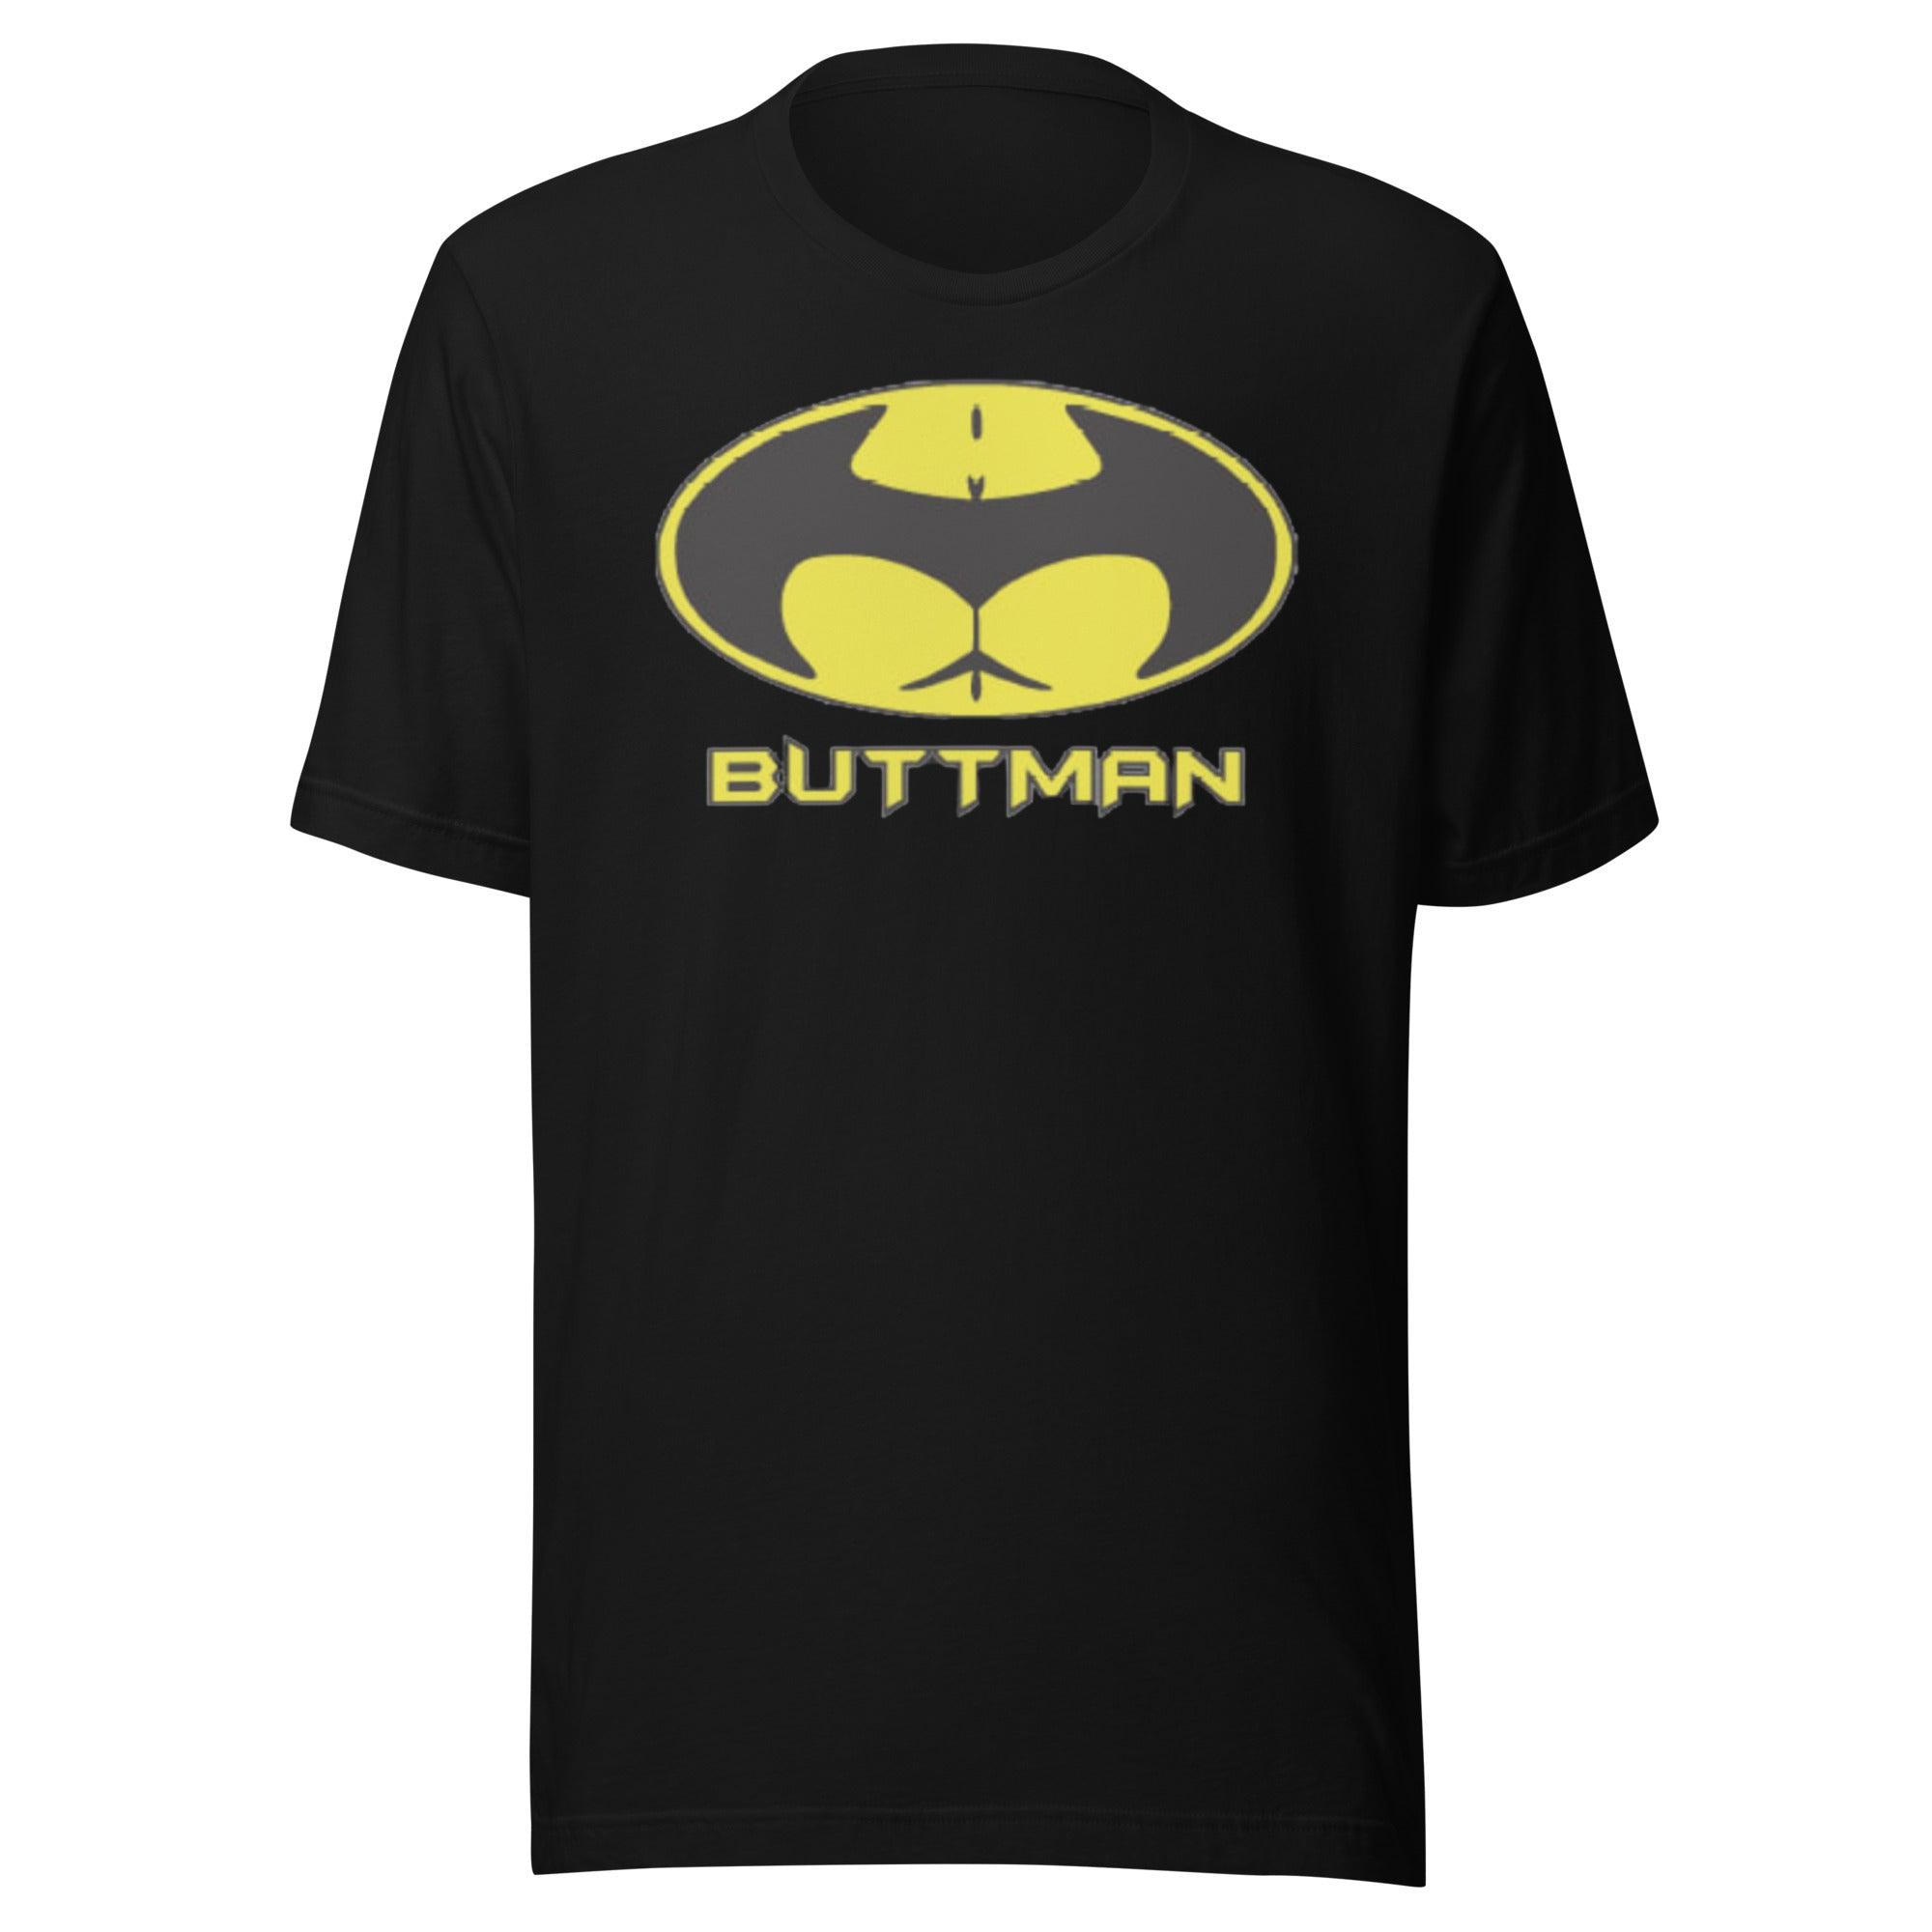 Short Sleeve T-Shirt Buttman Ultra Soft 100% Cotton Unisex Tee - TopKoalaTee